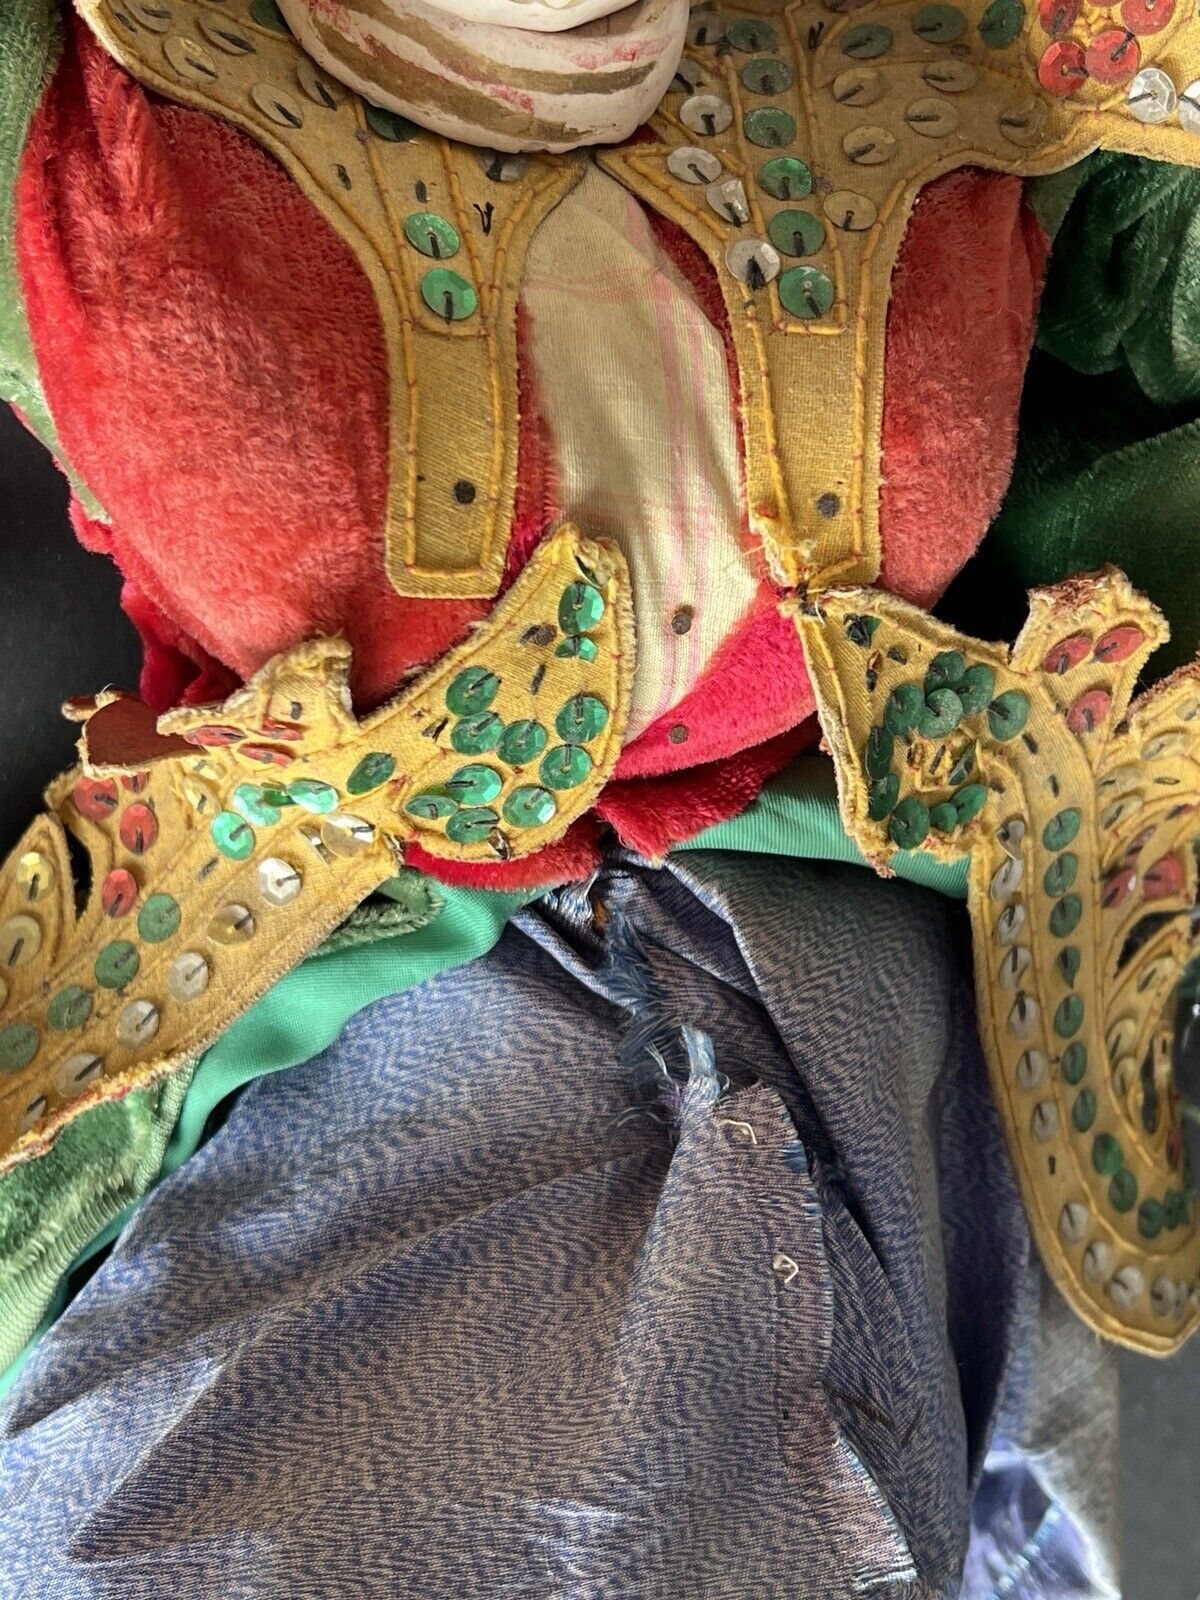 Antique Asian Burmese Folk Art Wooden Puppet Marionette Doll